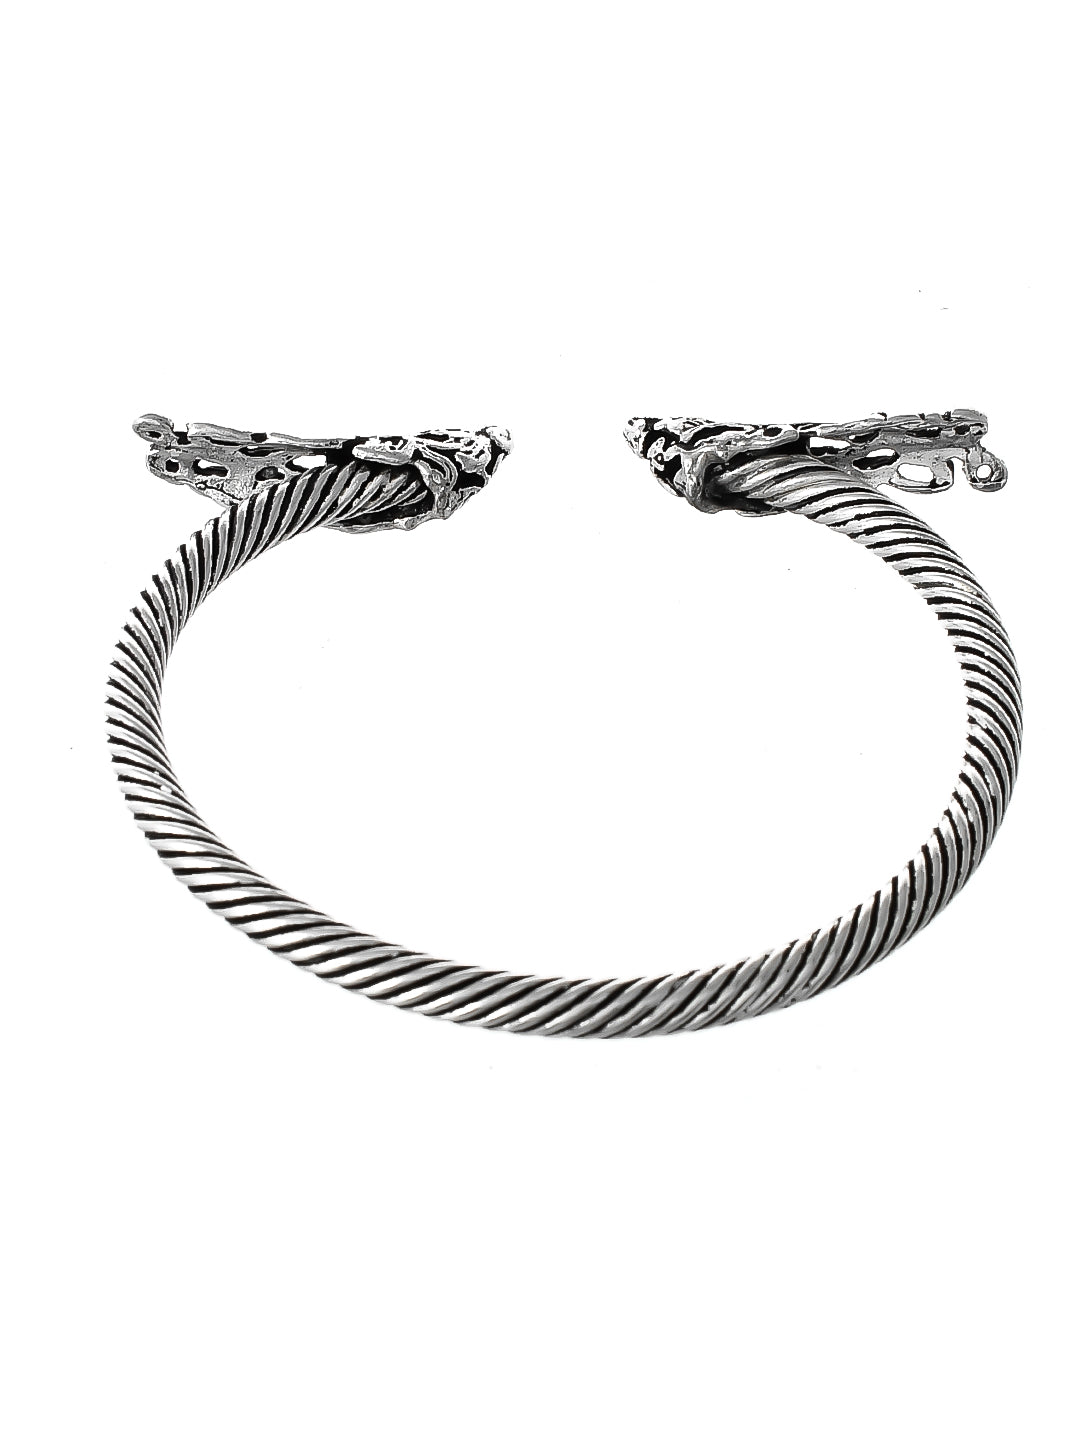 Buy Silver Bracelet Online - Gulistaan Jaali Bracelet from Quirksmith